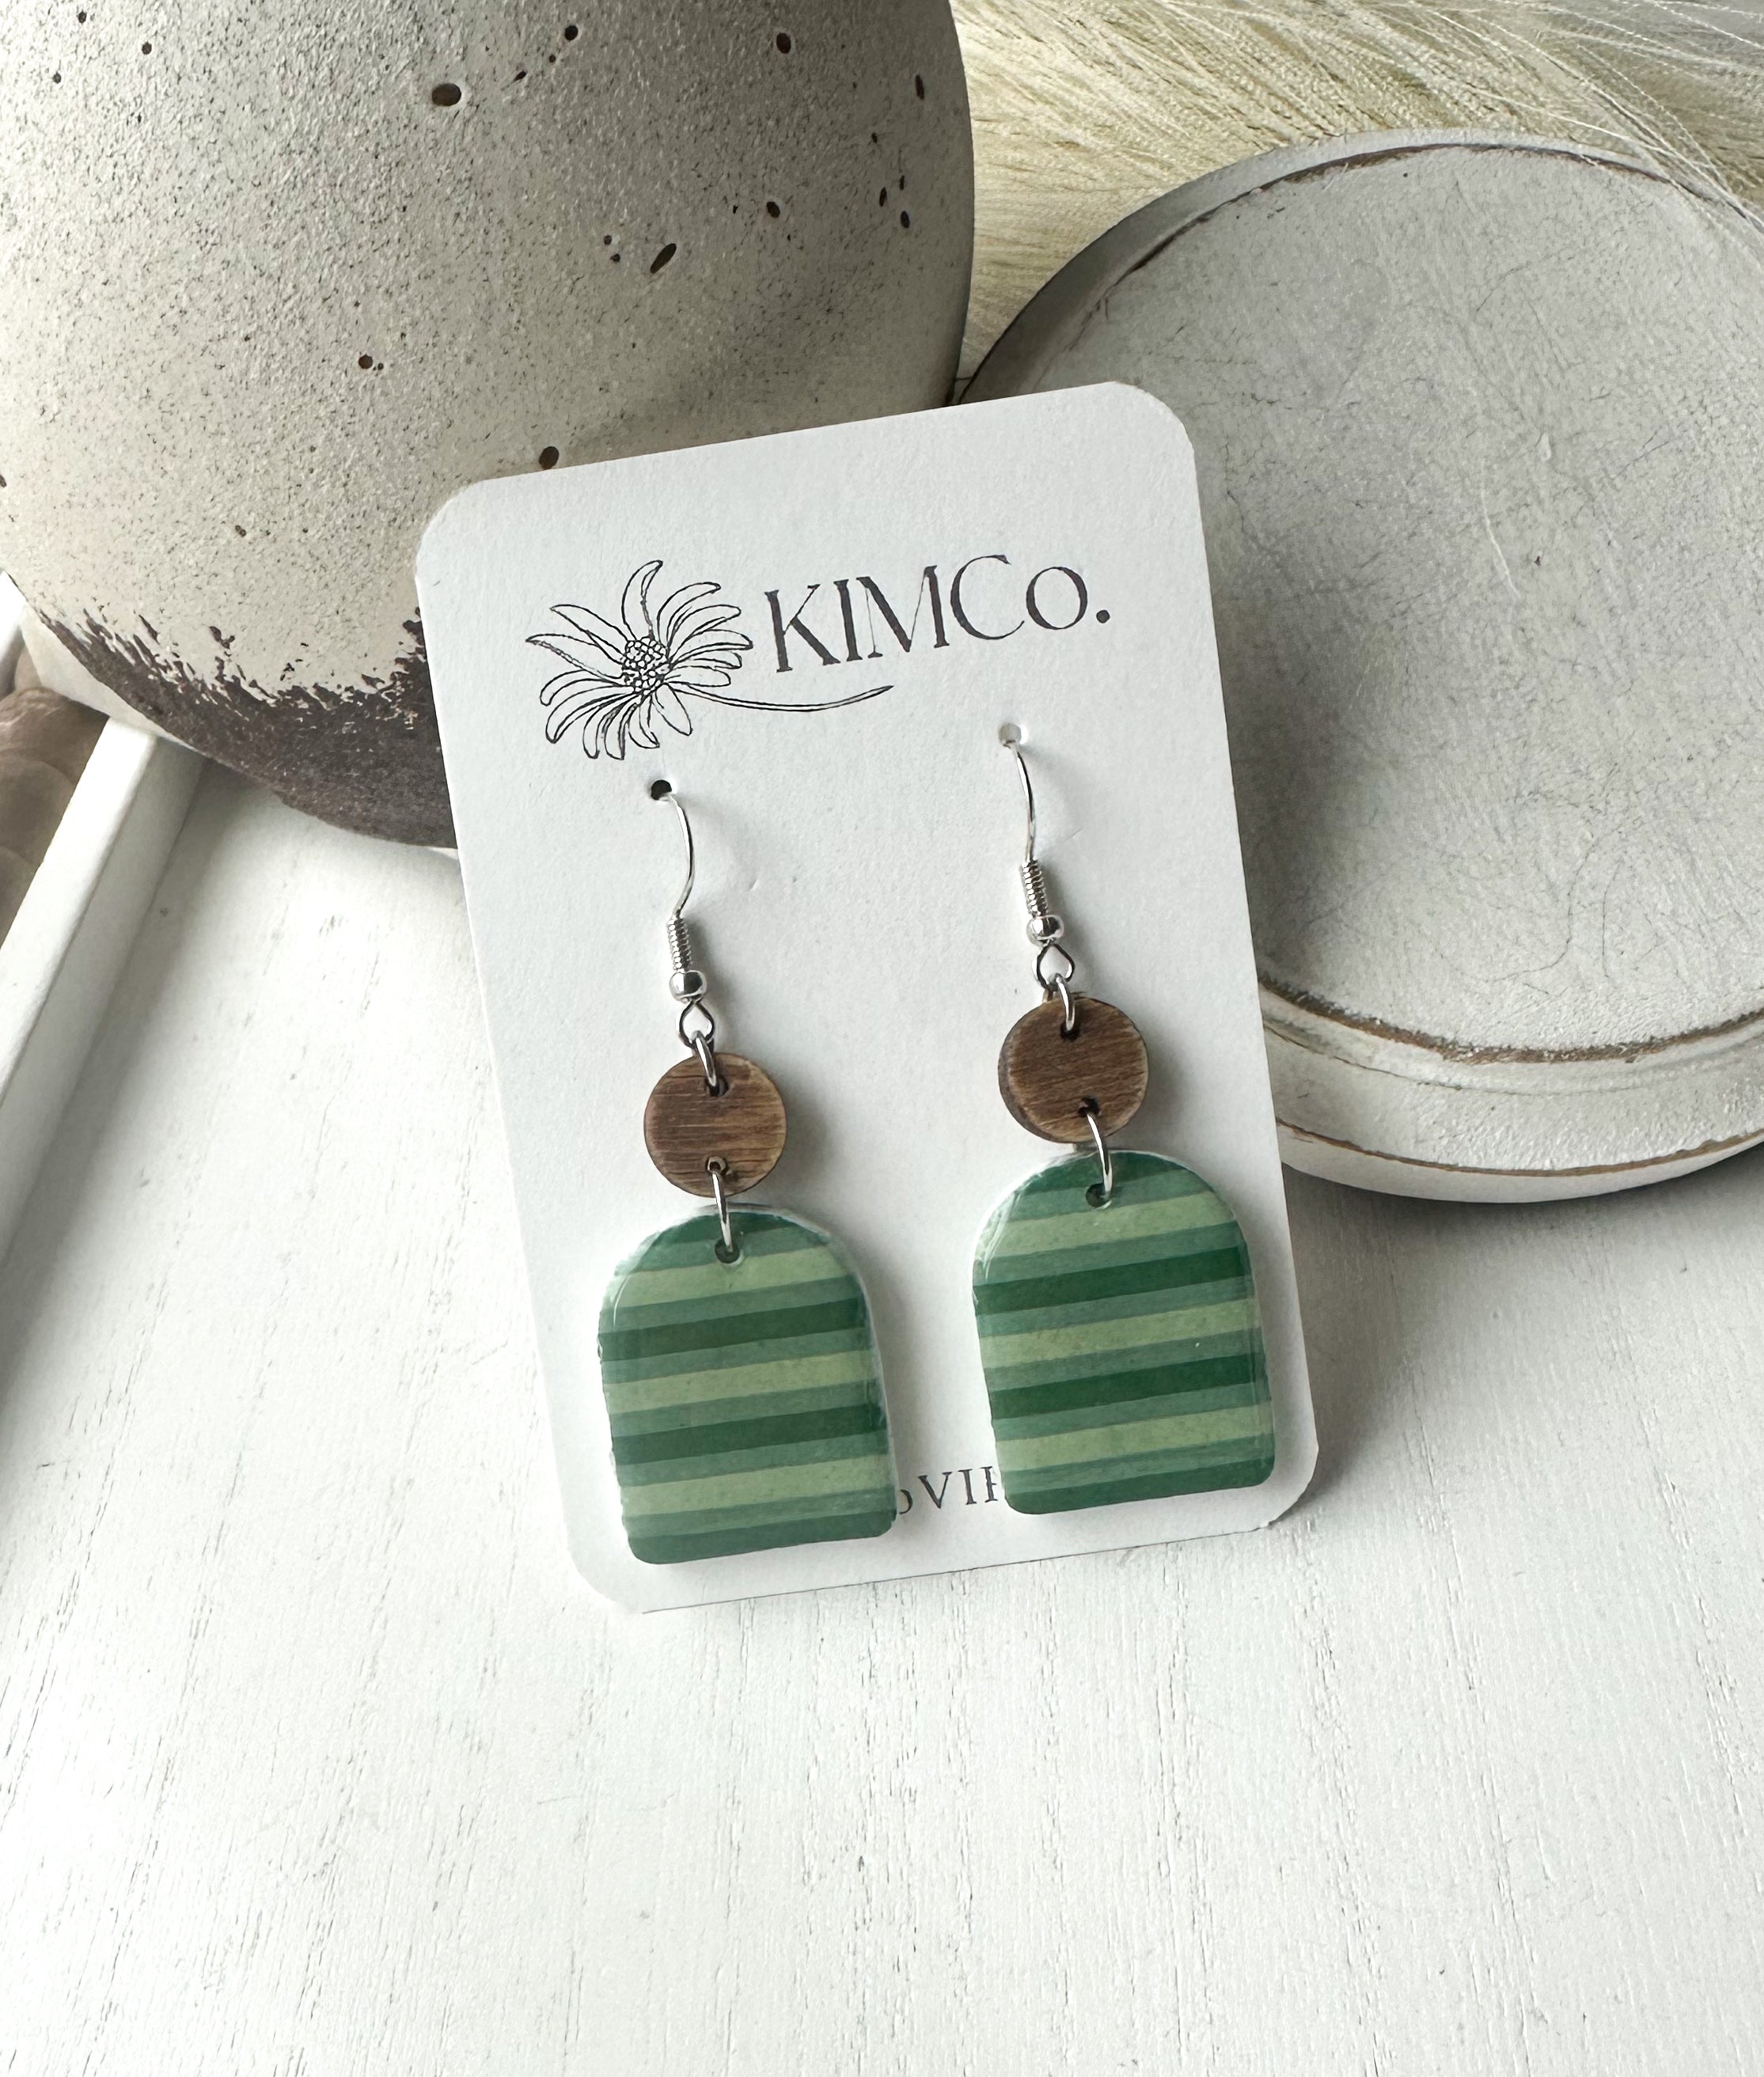 Polymer Clay Earrings|statement earrings|gifts for her|colorful earrings|boho earrings|abstract earrings|green earrings|shamrocks|St. Patricks Day|stripe earrings